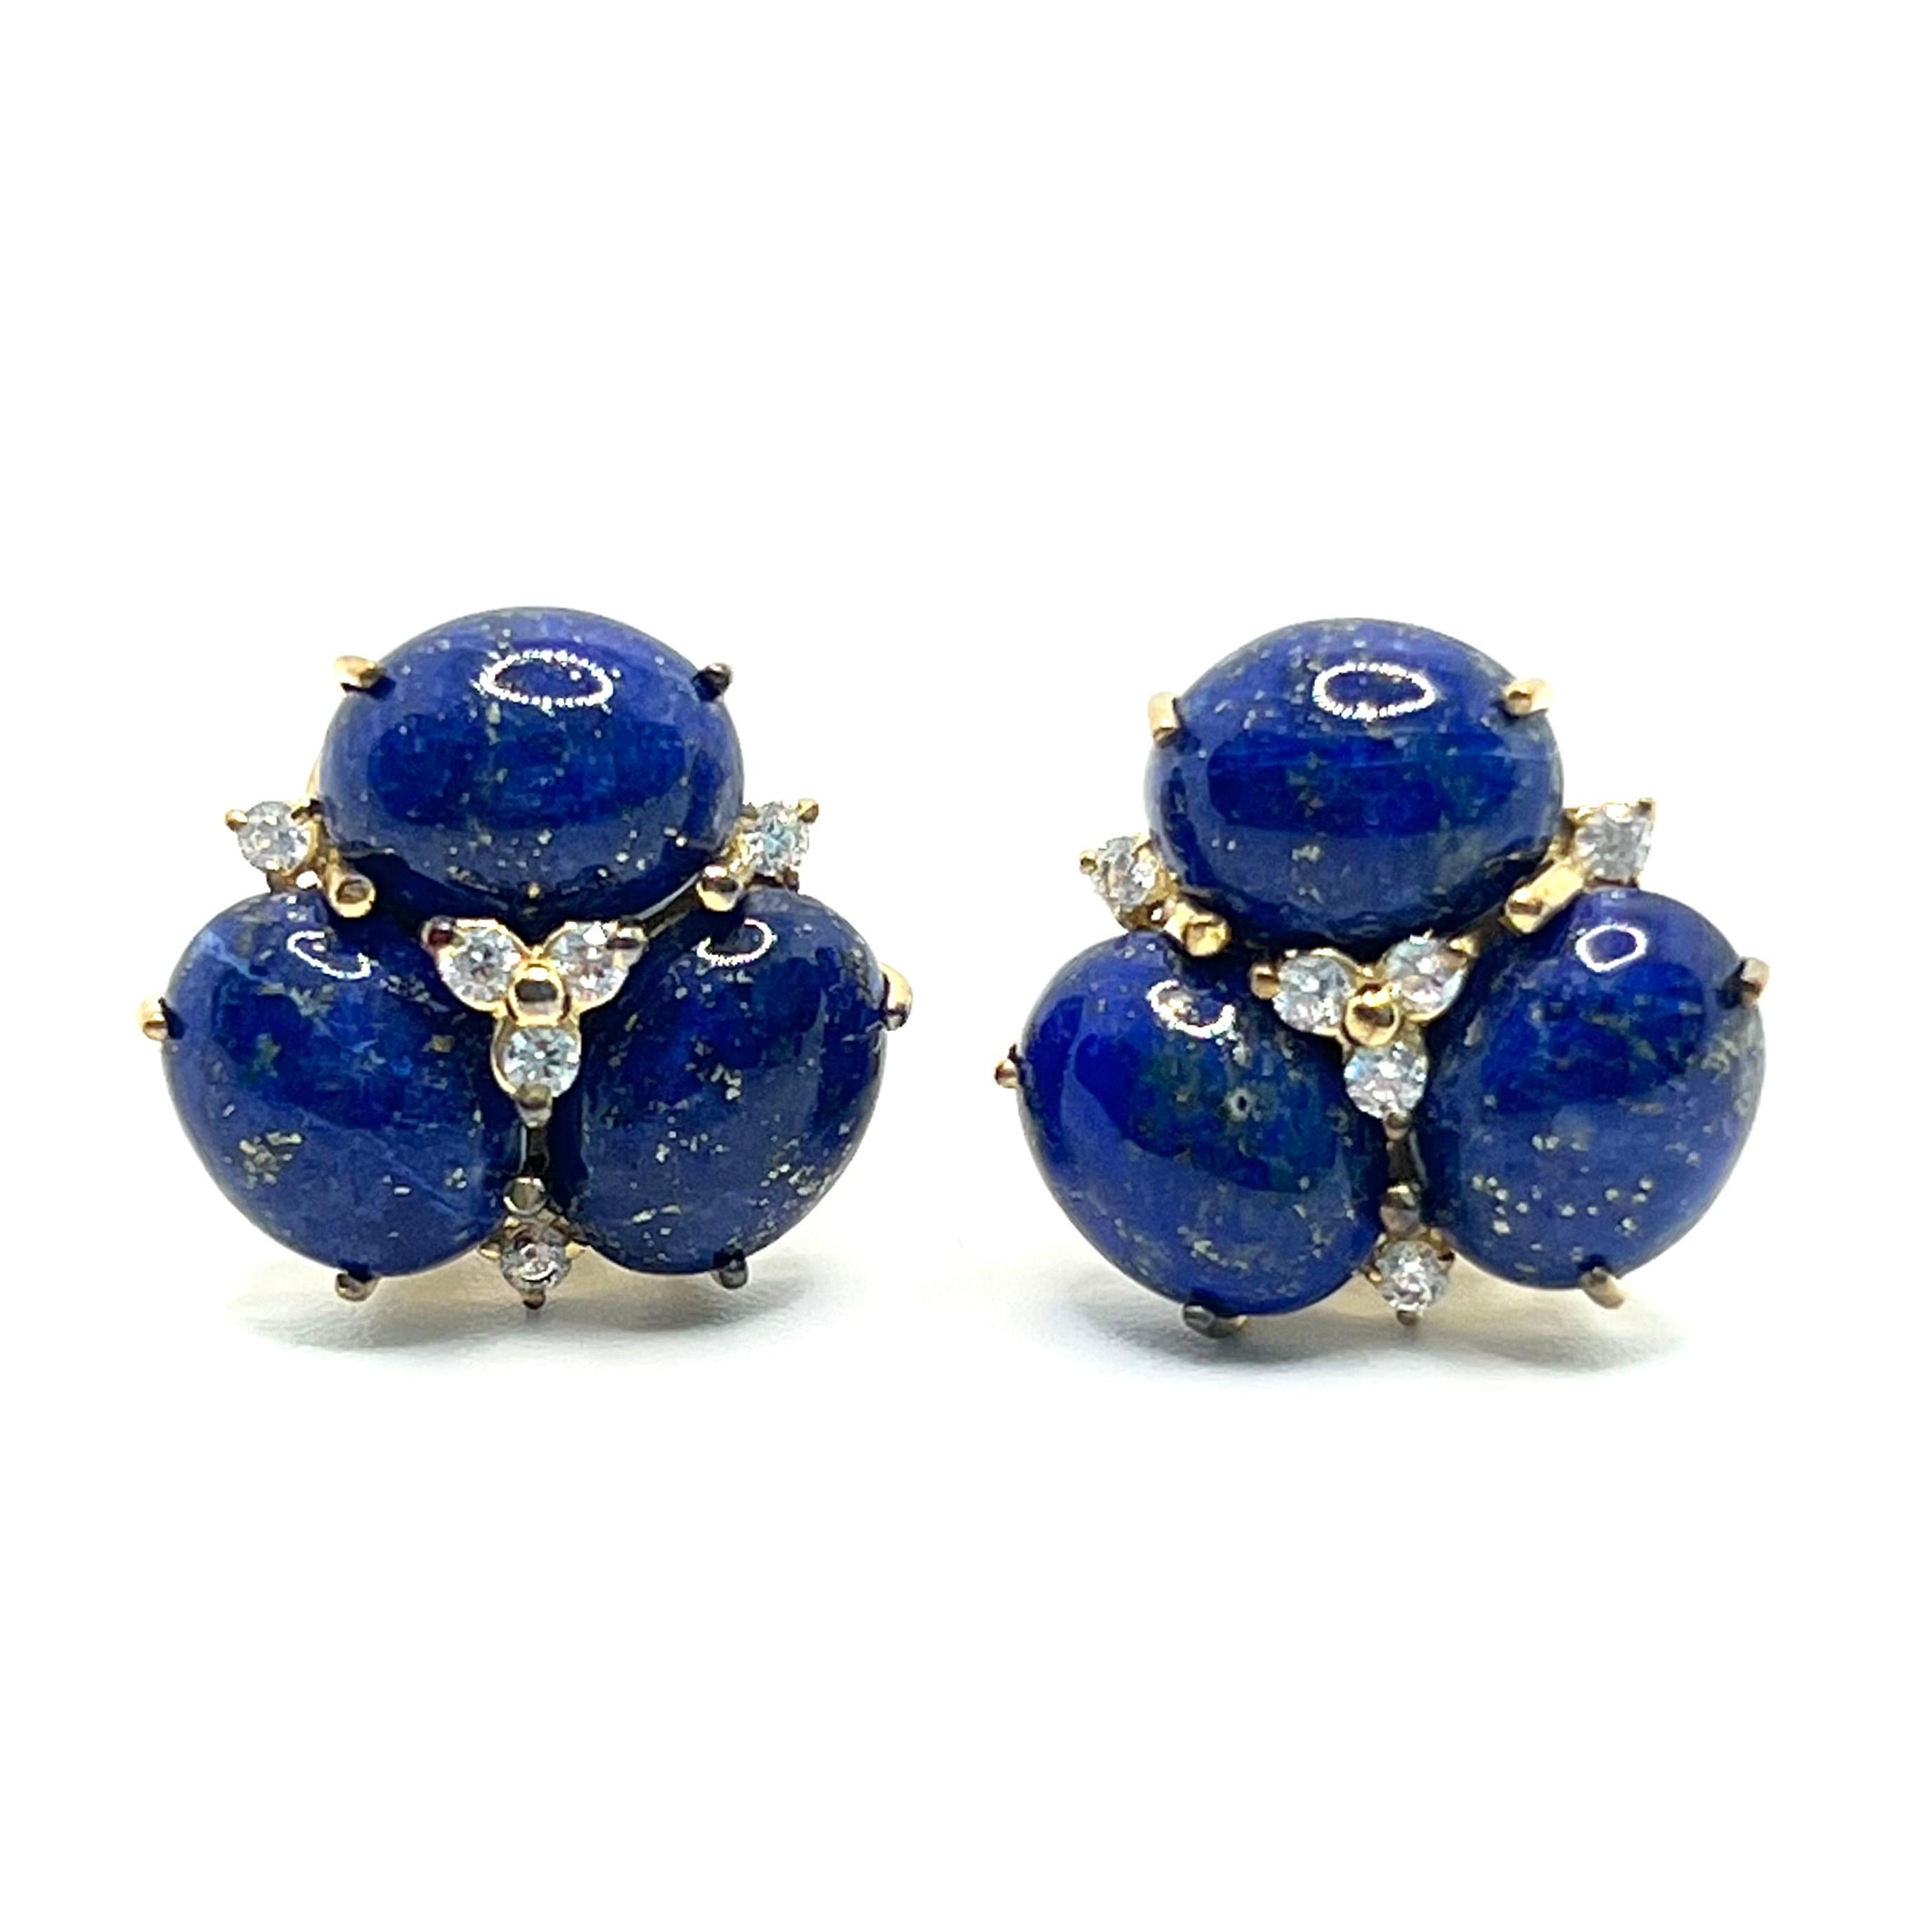 Cette superbe paire de boucles d'oreilles est composée d'un ensemble de lapis-lazuli ovale taillé en cabochon, orné d'un diamant simulé rond, serti dans un vermeil en or jaune 18 carats sur argent sterling. Les pierres ovales de lapis-lazuli ont une